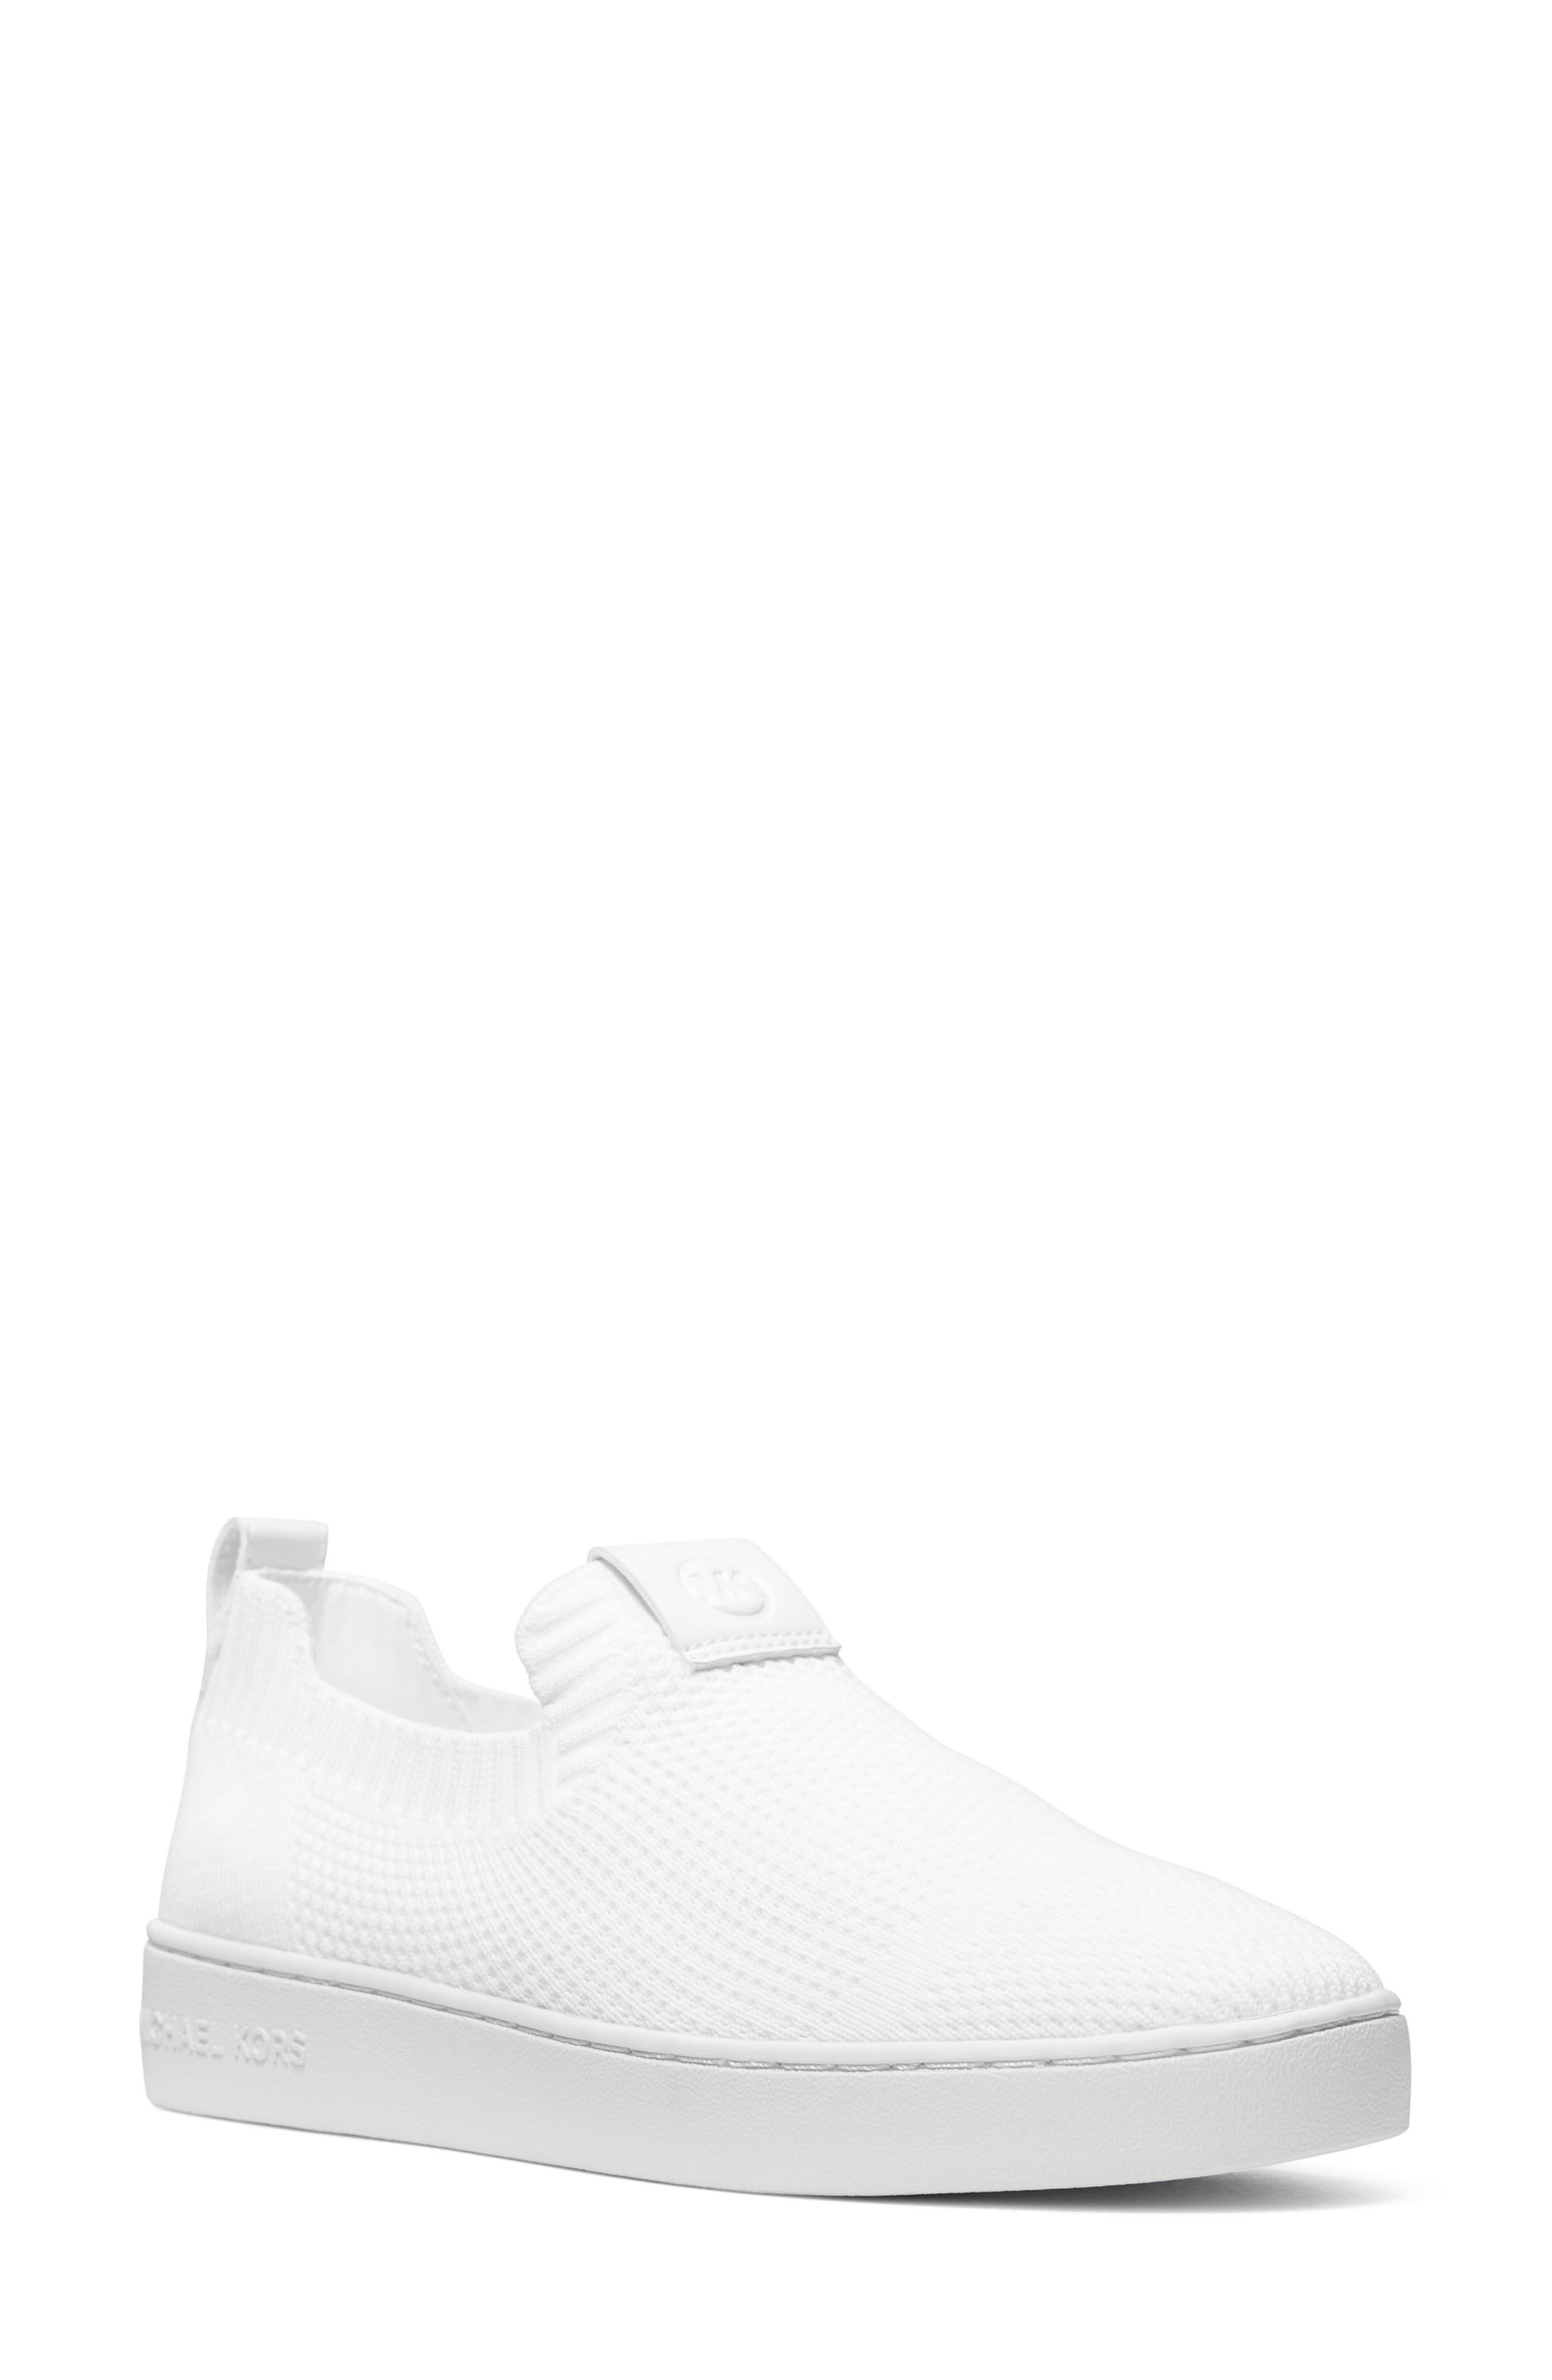 MICHAEL Michael Kors Juno Knit Sneaker in White | Lyst